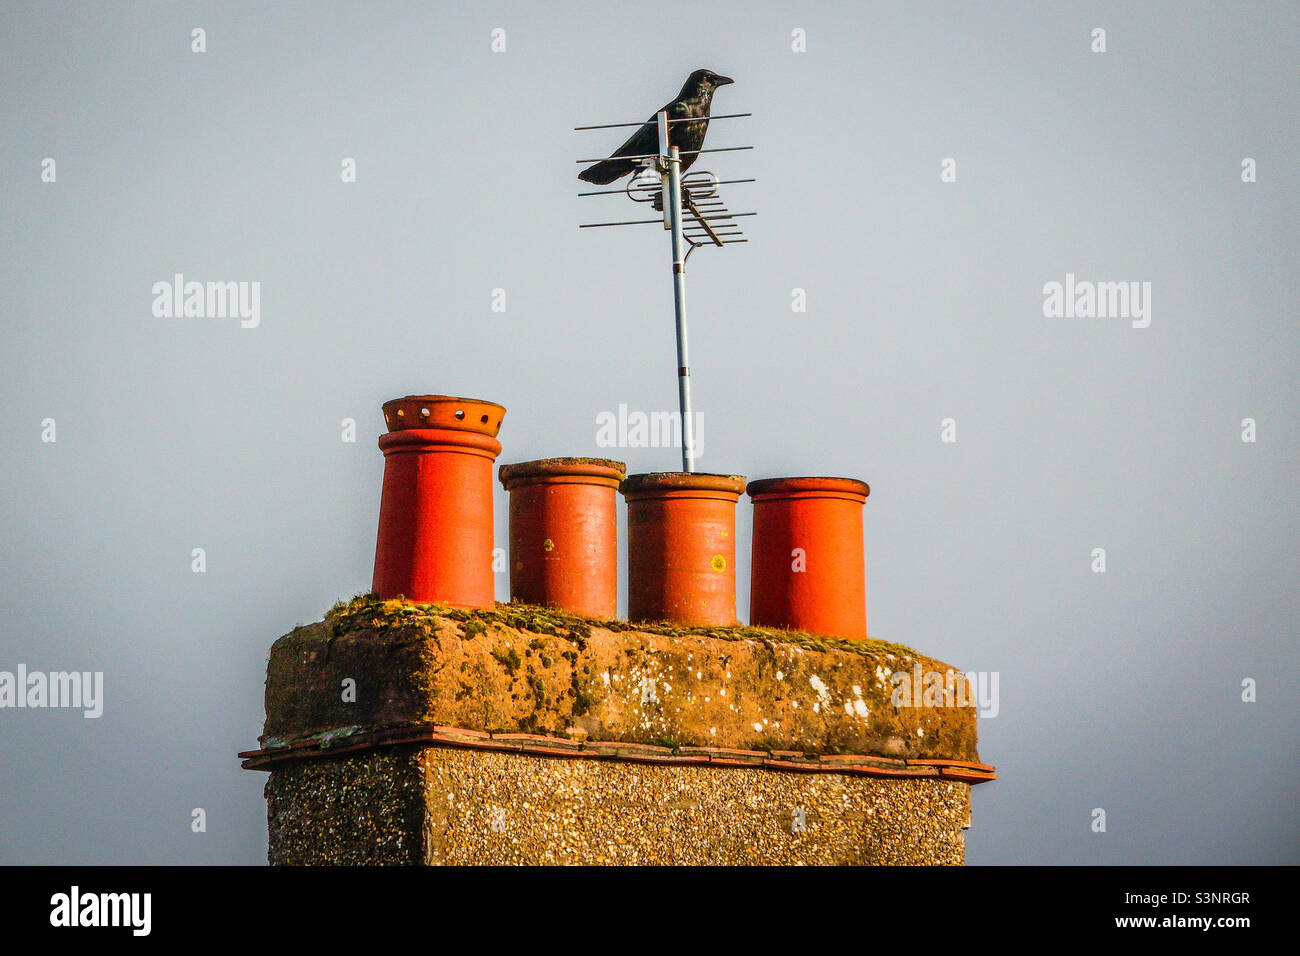 Die perfekte Luftaufnahme - Eine schwarze Krähe, die auf einer Fernsehantenne sitzt, die auf einem Schornstein auf einem Wohneigentum in Glasgow, Schottland, montiert ist Stockfoto